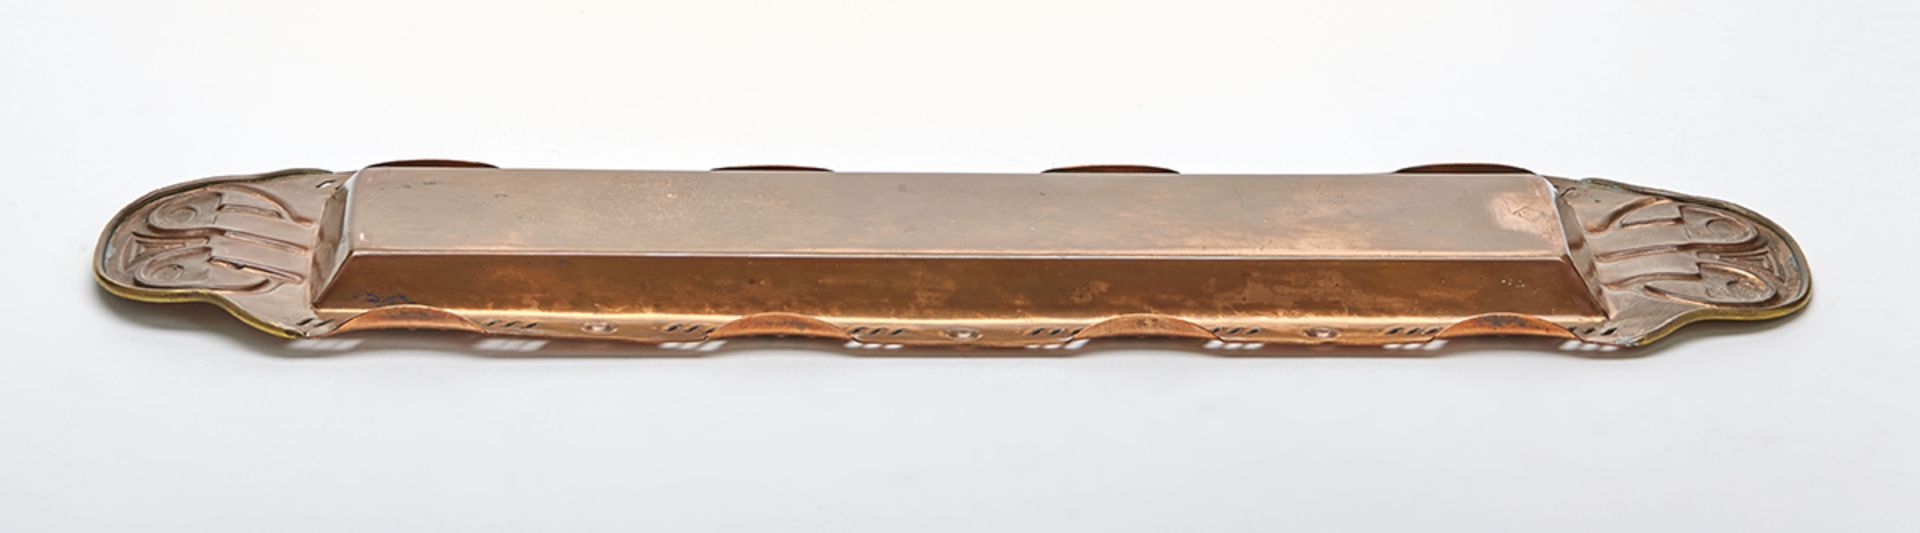 Stylish Jugendstil Gebruder Bing Copper & Brass Tray C.1900 - Bild 5 aus 8